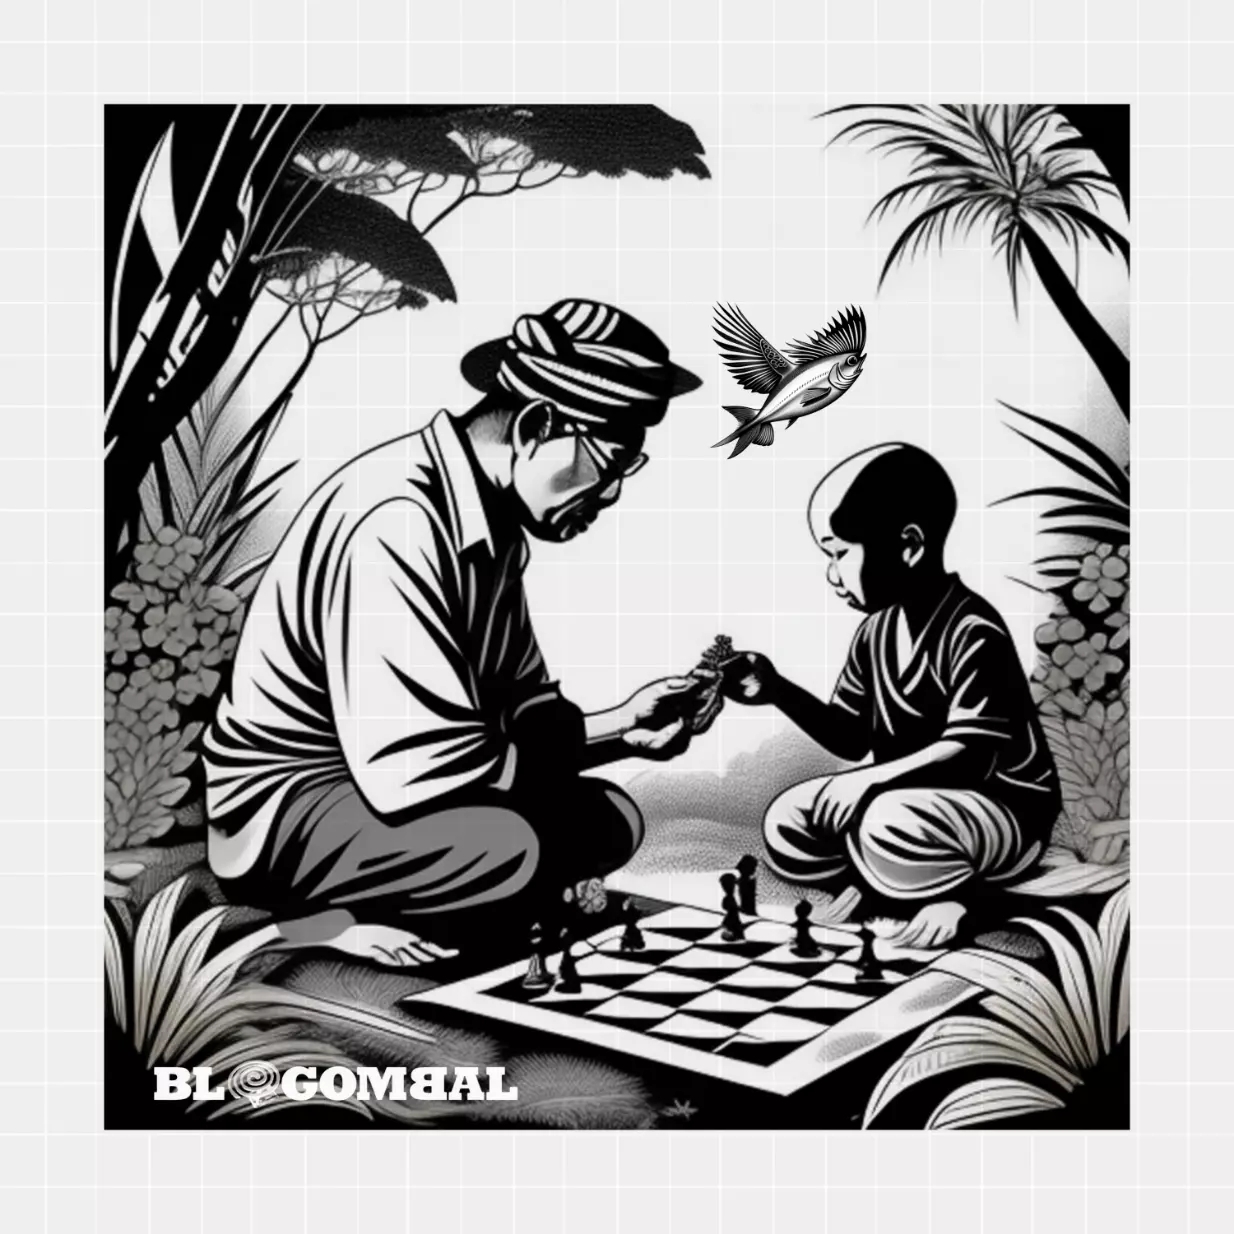 Ingin anak pinter catur supaya jadi presiden tokcer spt Jokowi 